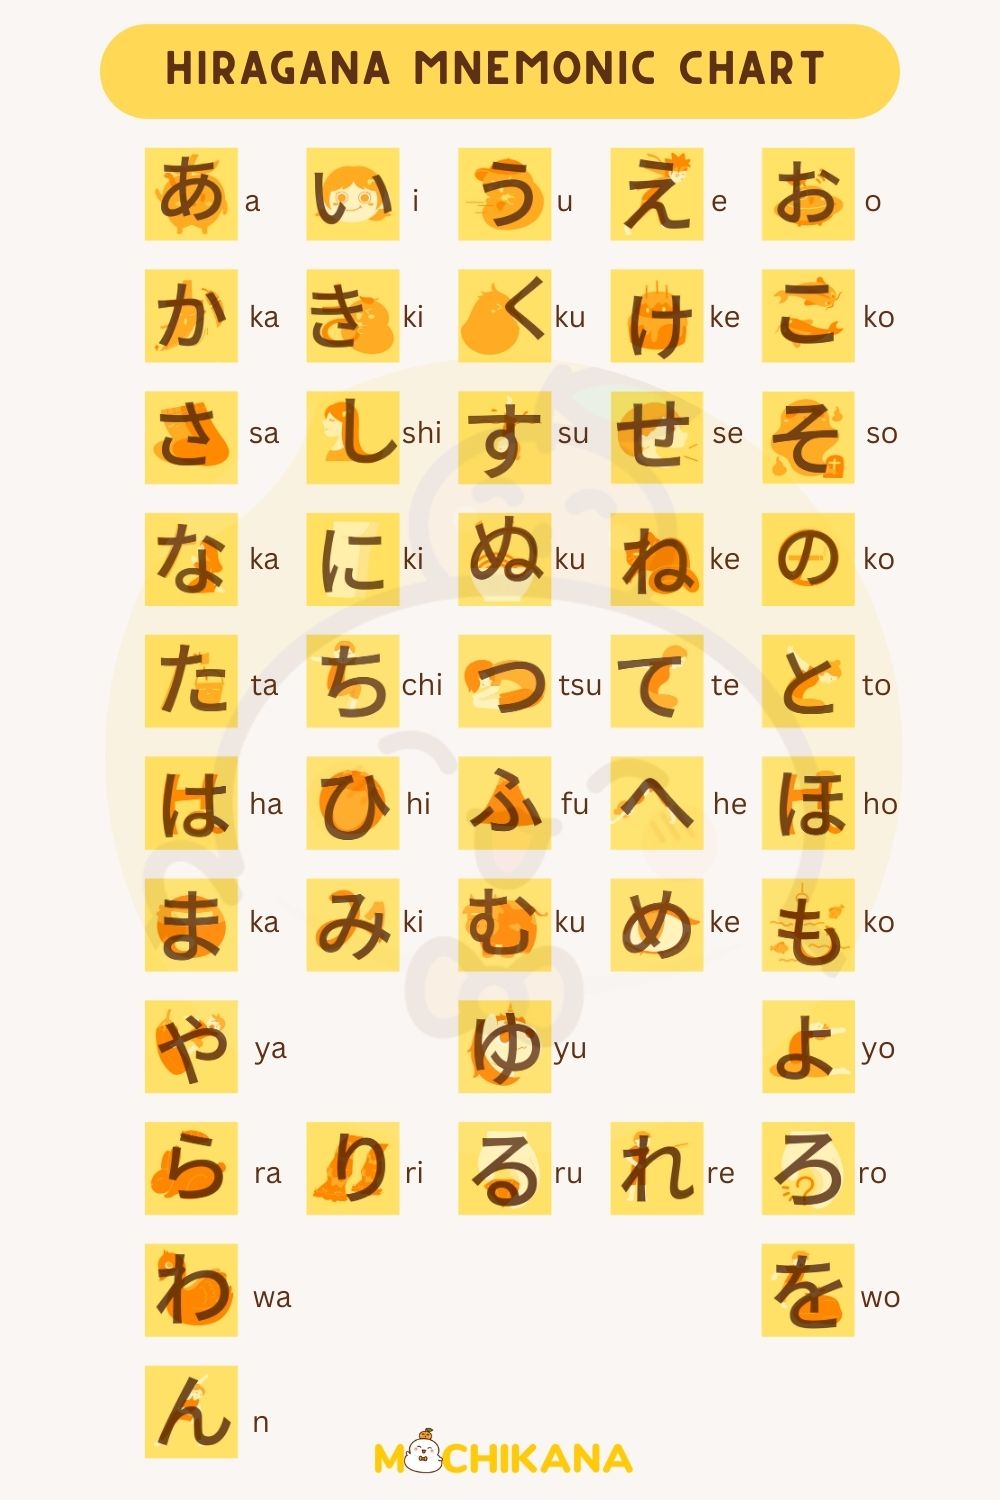 Hiragana mnemonic chart